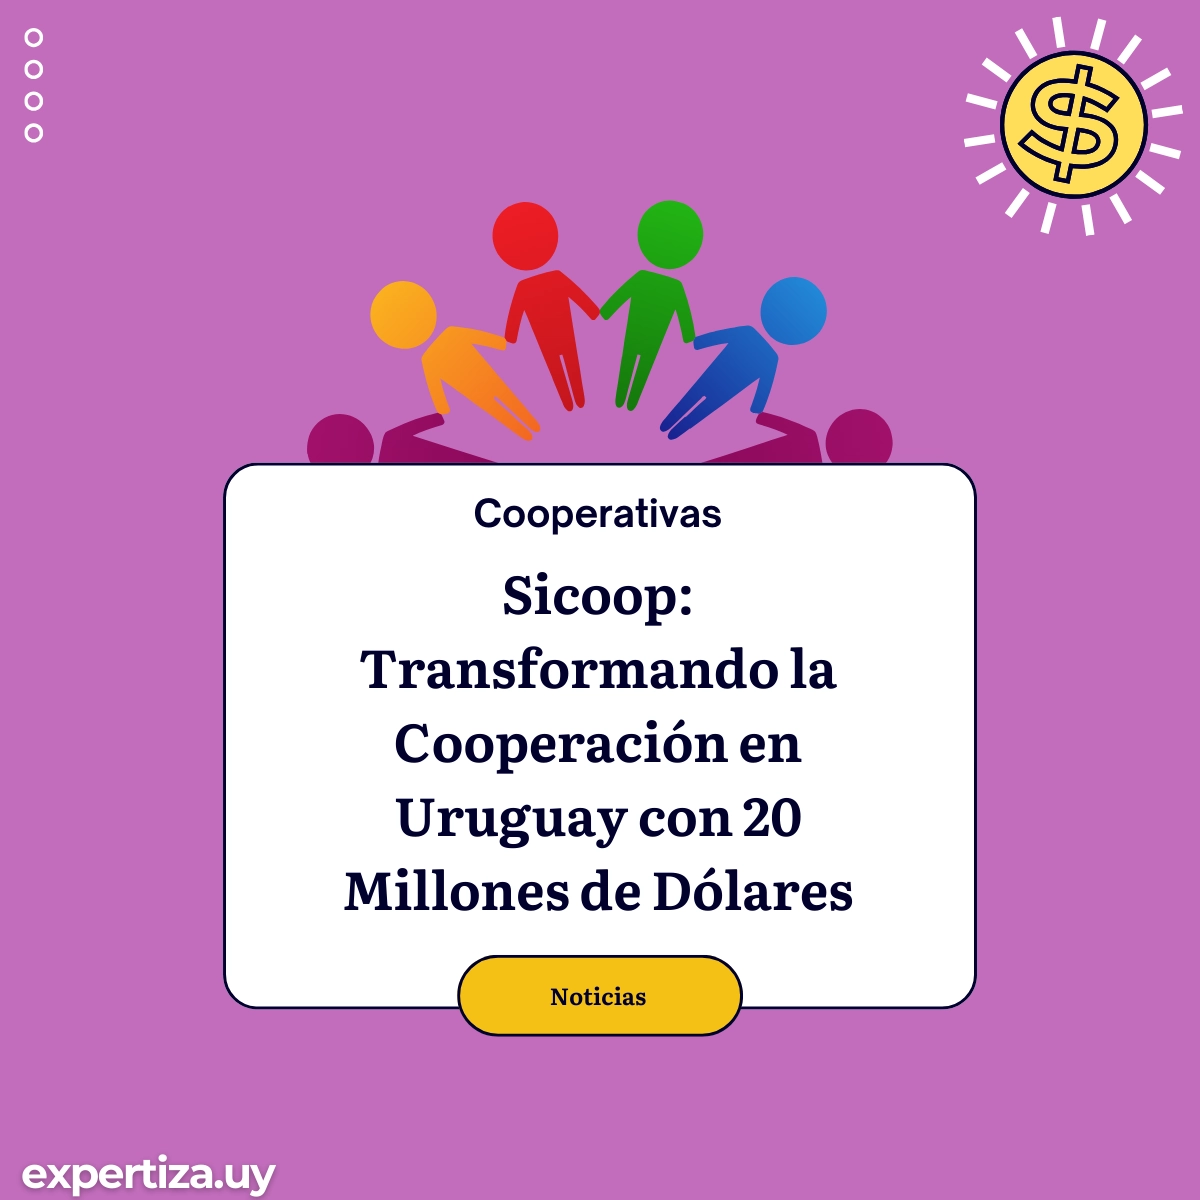 Transformando la Cooperación en Uruguay con 20 Millones de Dólares.